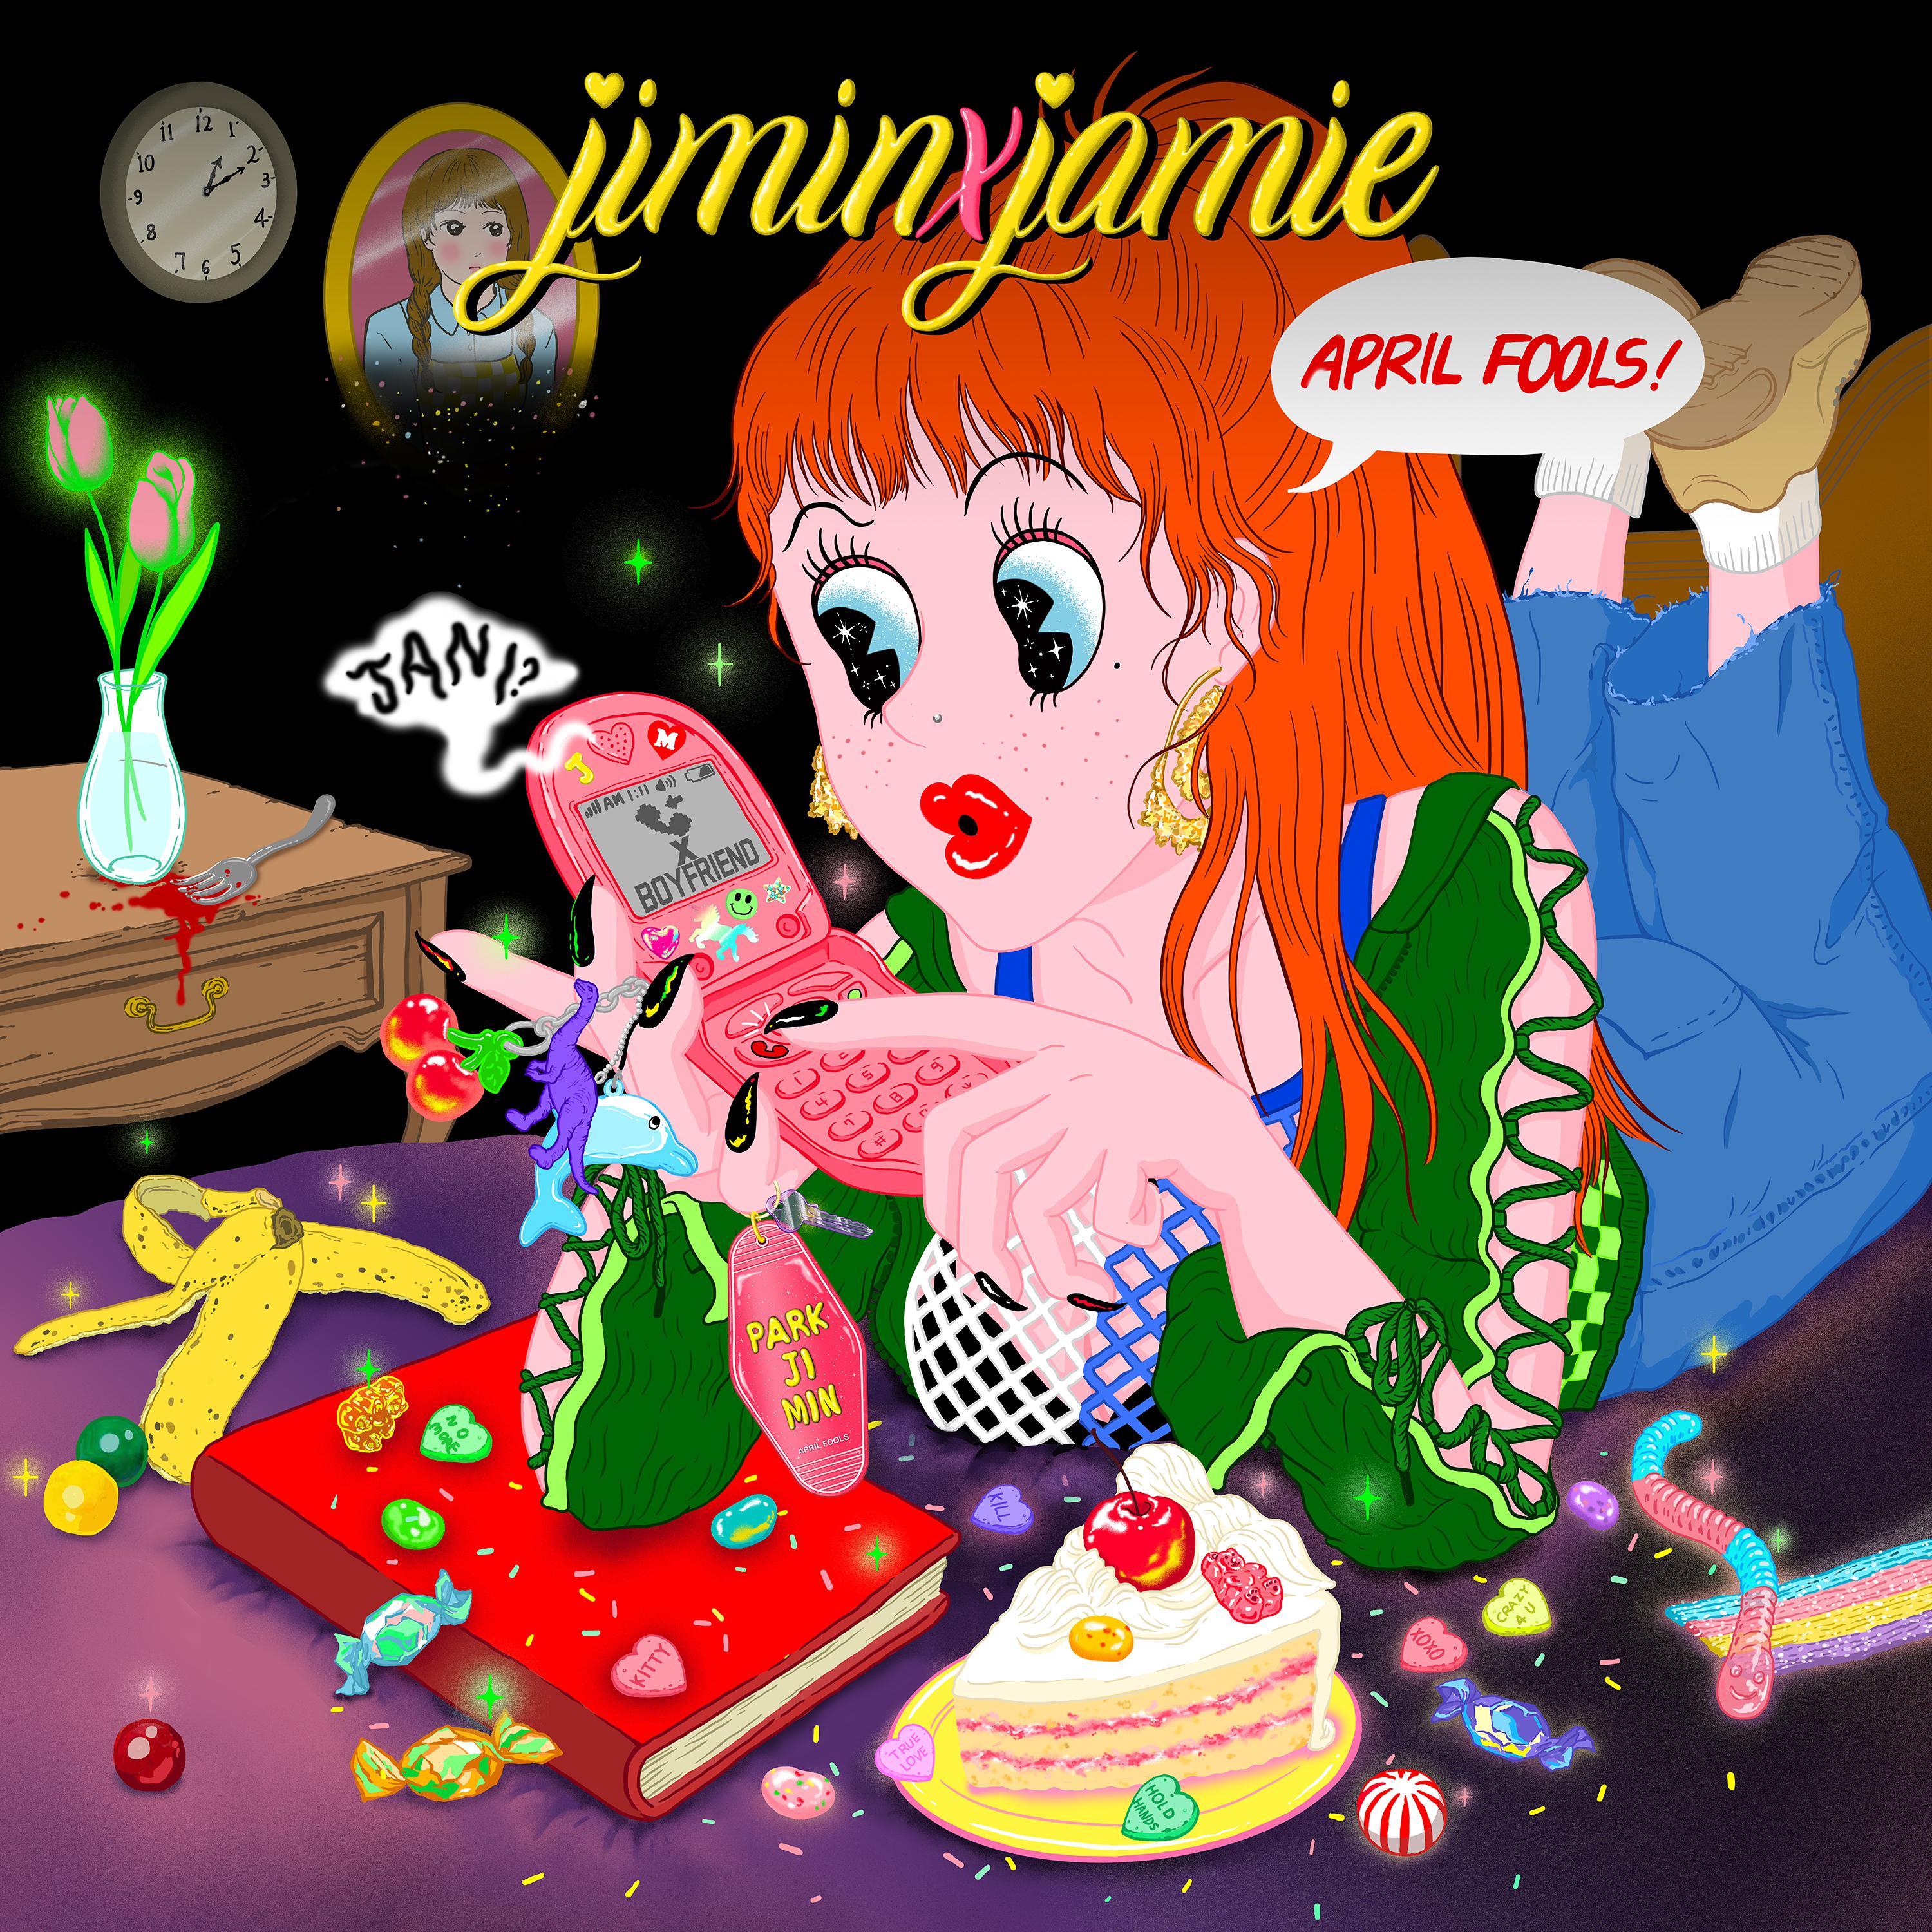 별歌词 歌手JAMIE-专辑jiminxjamie-单曲《별》LRC歌词下载